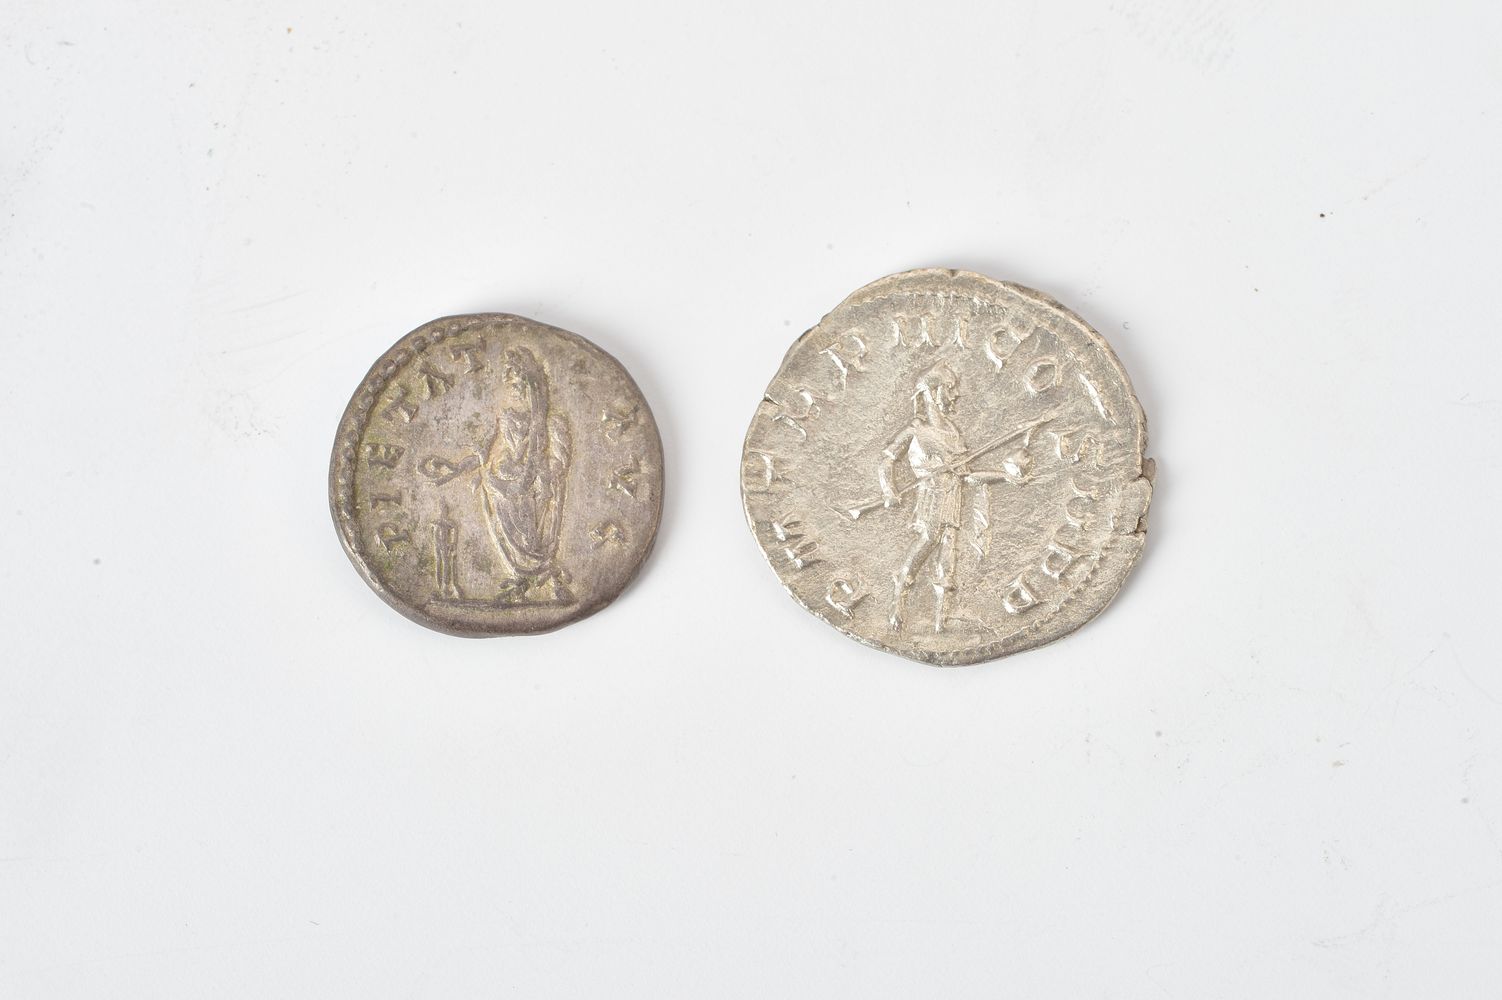 Rome, Septimius Severus (AD 193 - 211), silver Denarius - Image 2 of 2